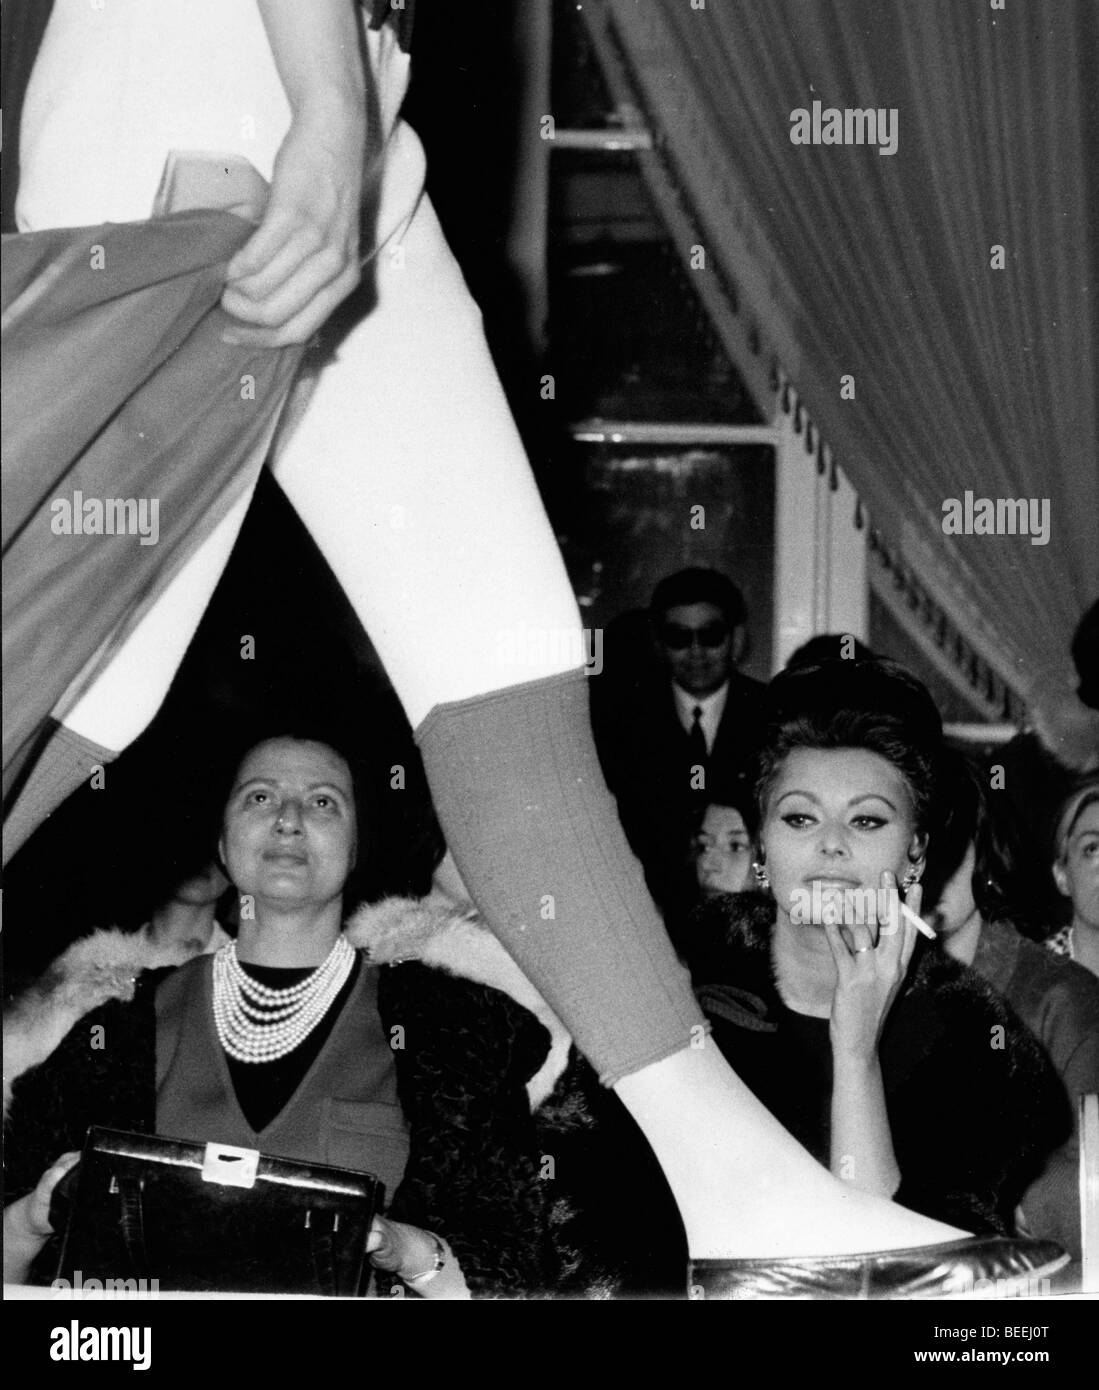 Schauspielerin Sophia Loren in der ersten Reihe einer Modenschau Stockfoto